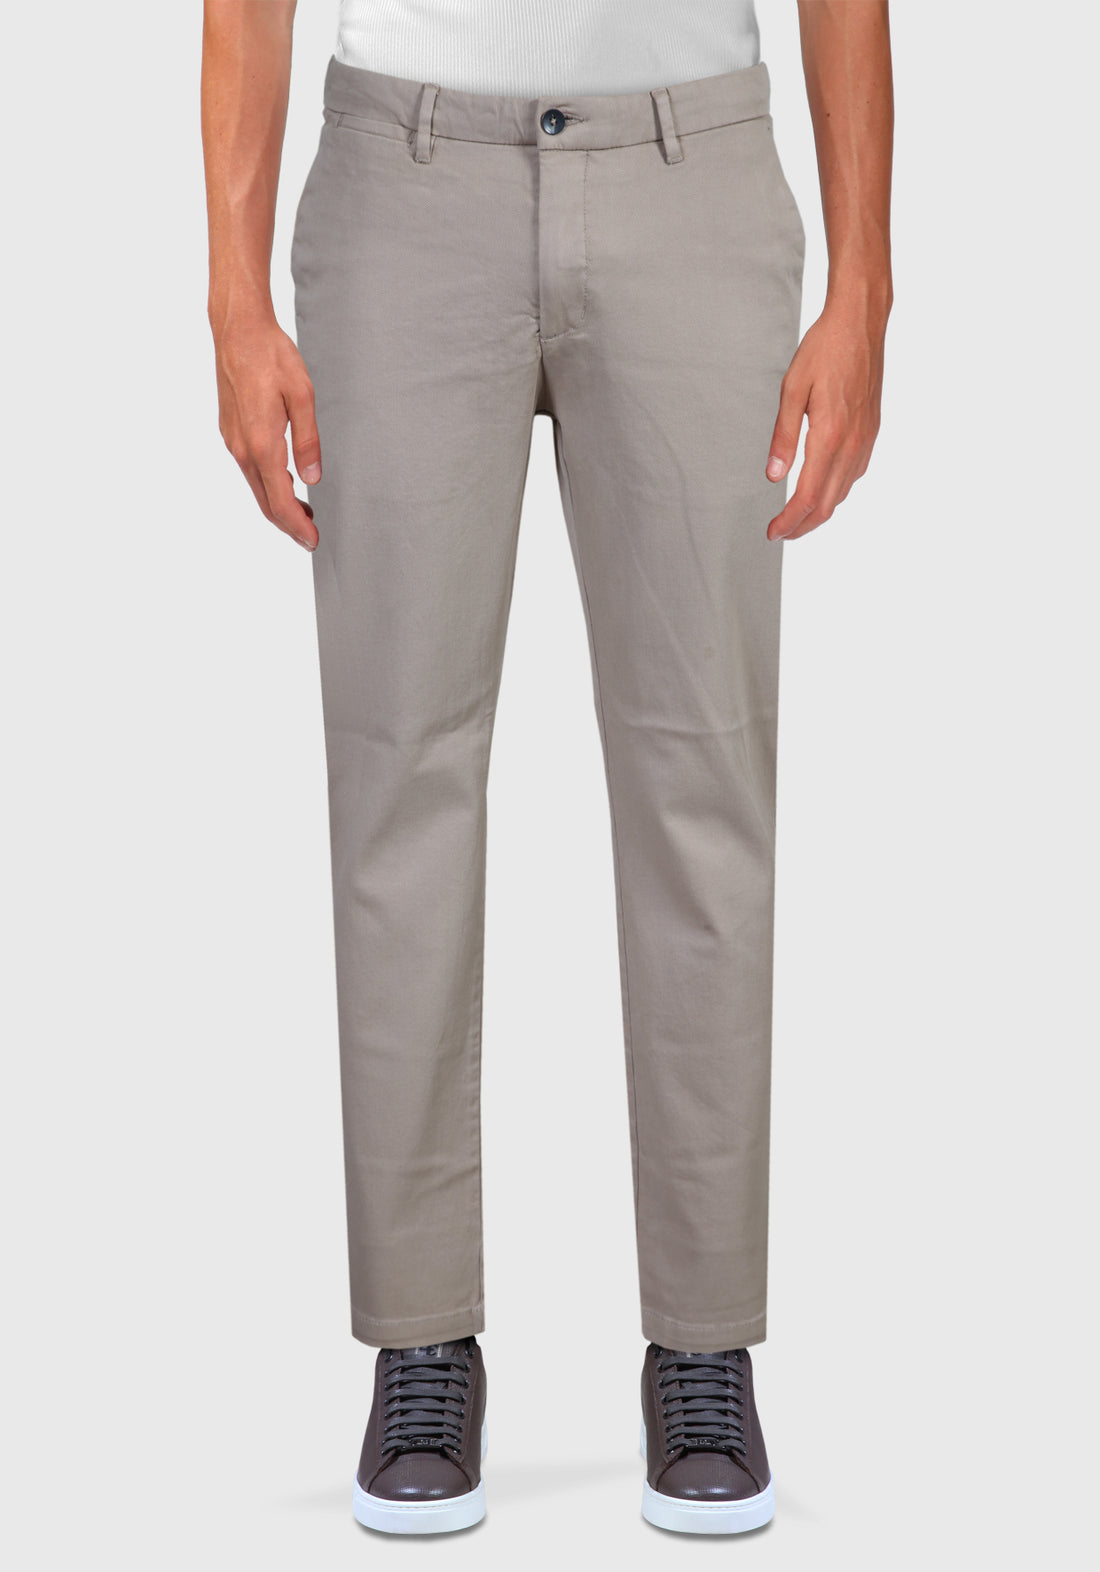 Pantalone Tasca America cotone Caldo Armaturato - Sabbia